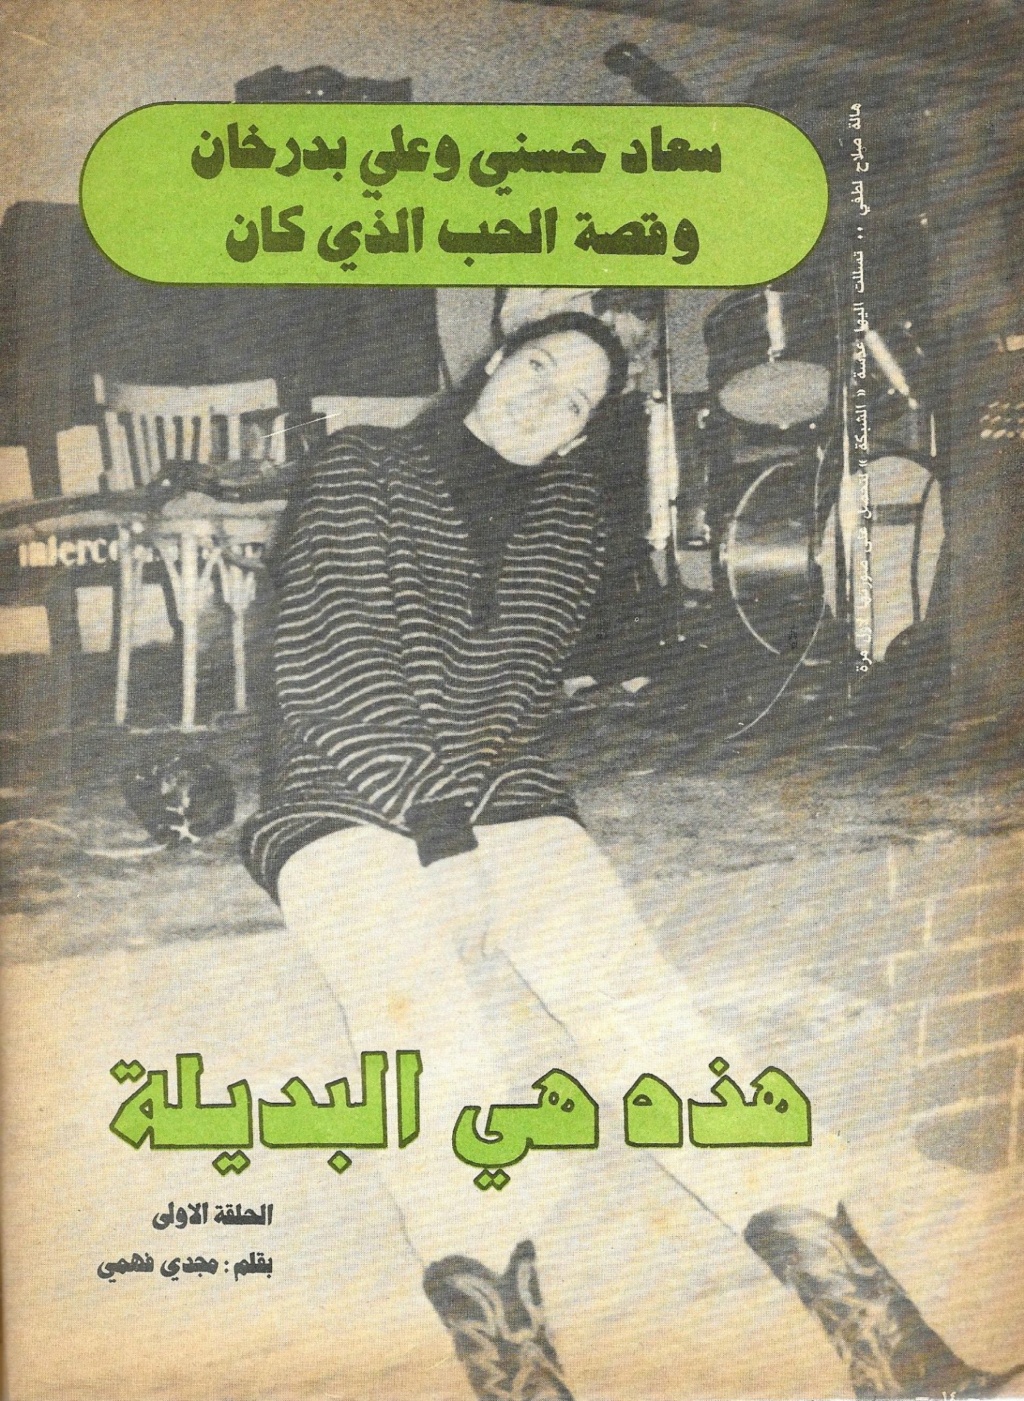 1981 - مقال صحفي : سعاد حسني وعلي بدرخان وقصة الحب الذي كان 1981 م 145